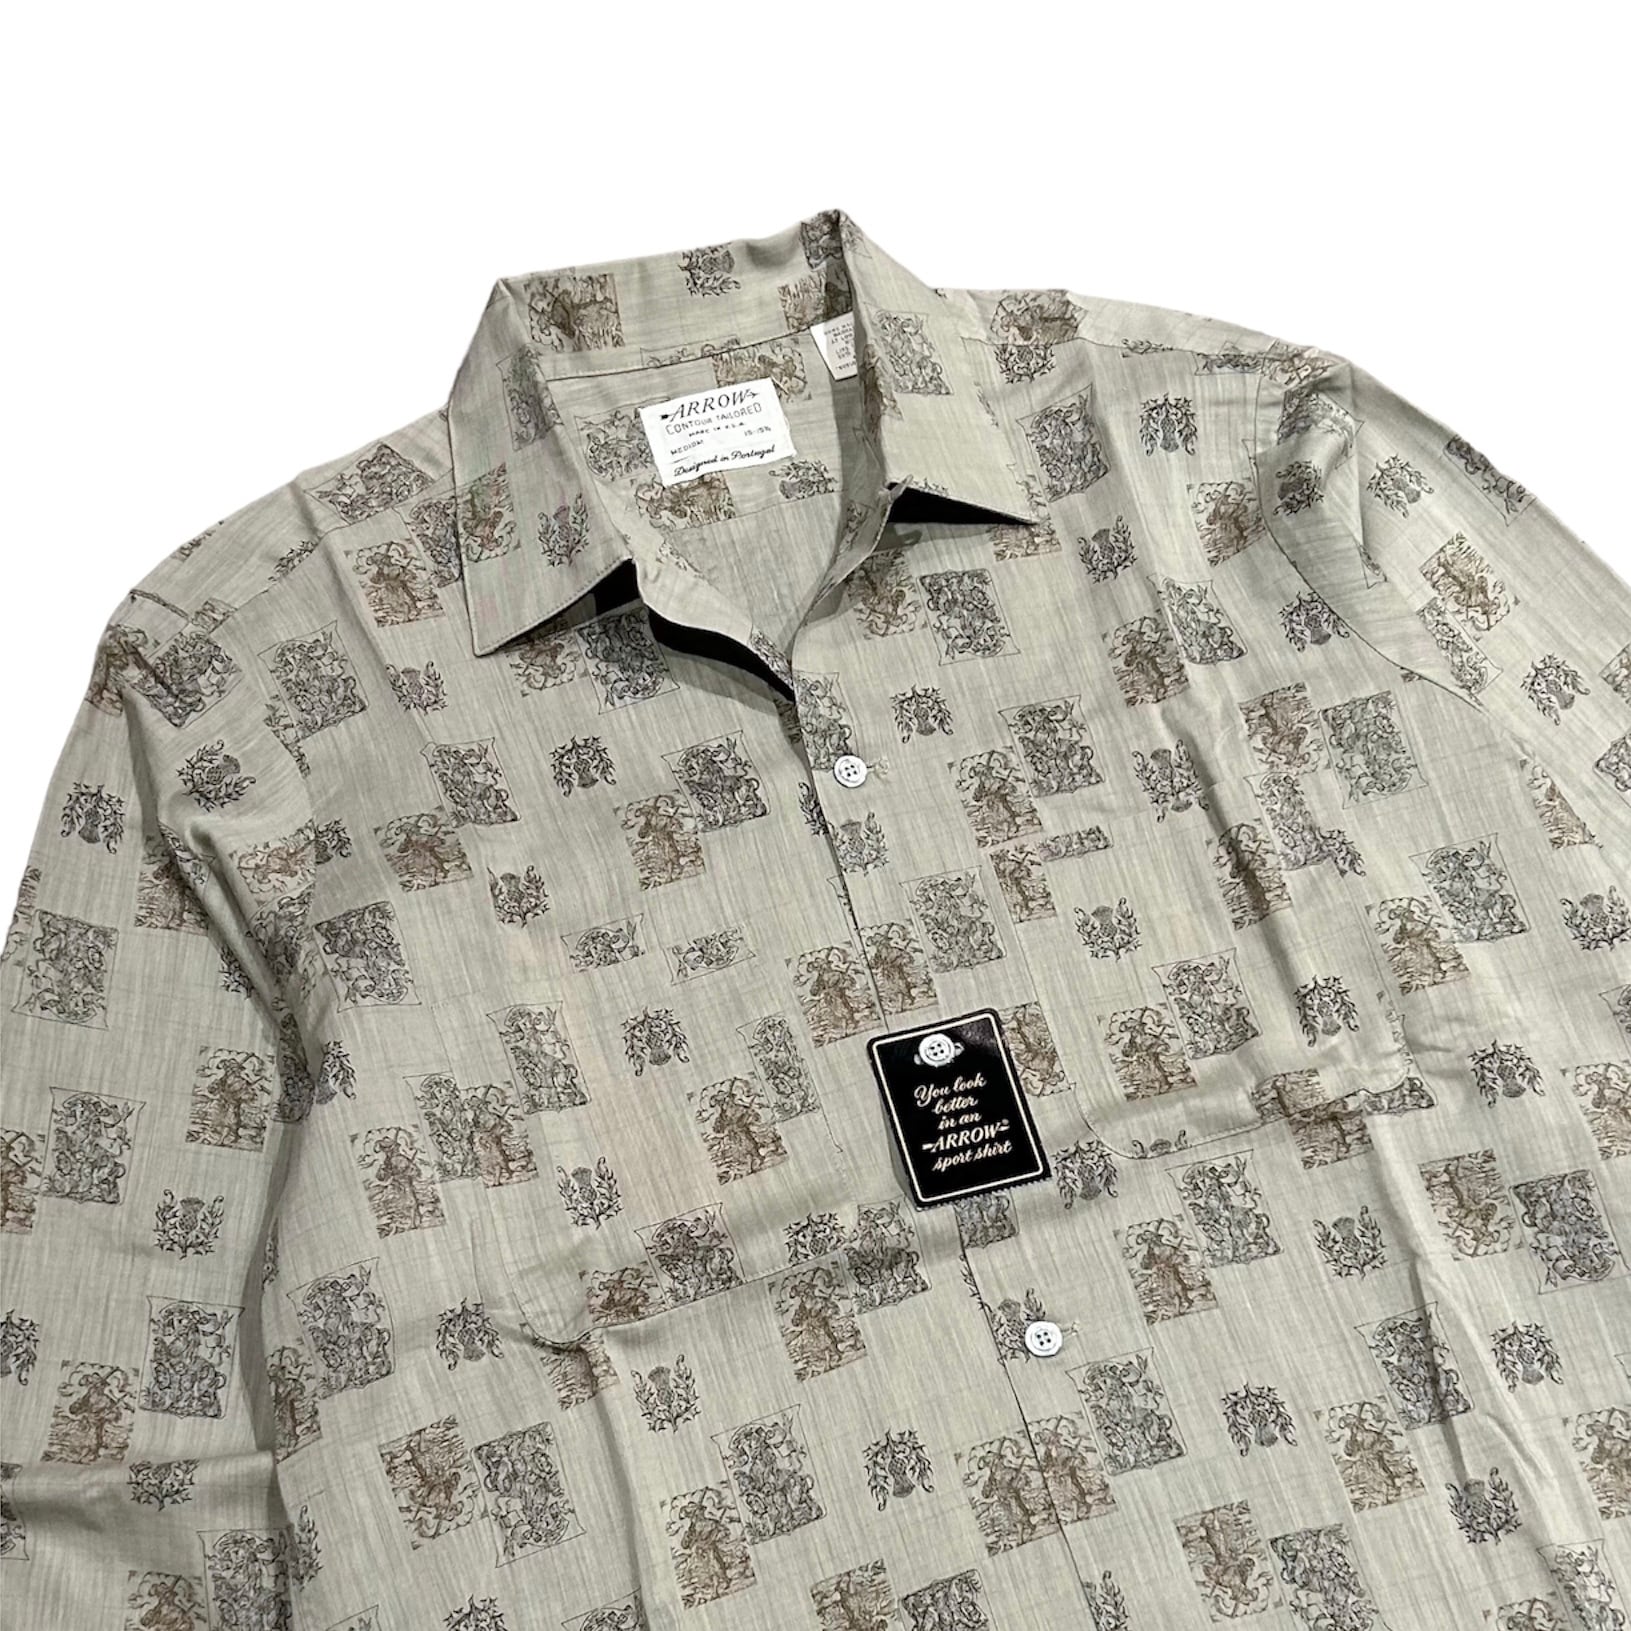 【Vintage】1960s Arrow cotton shirt